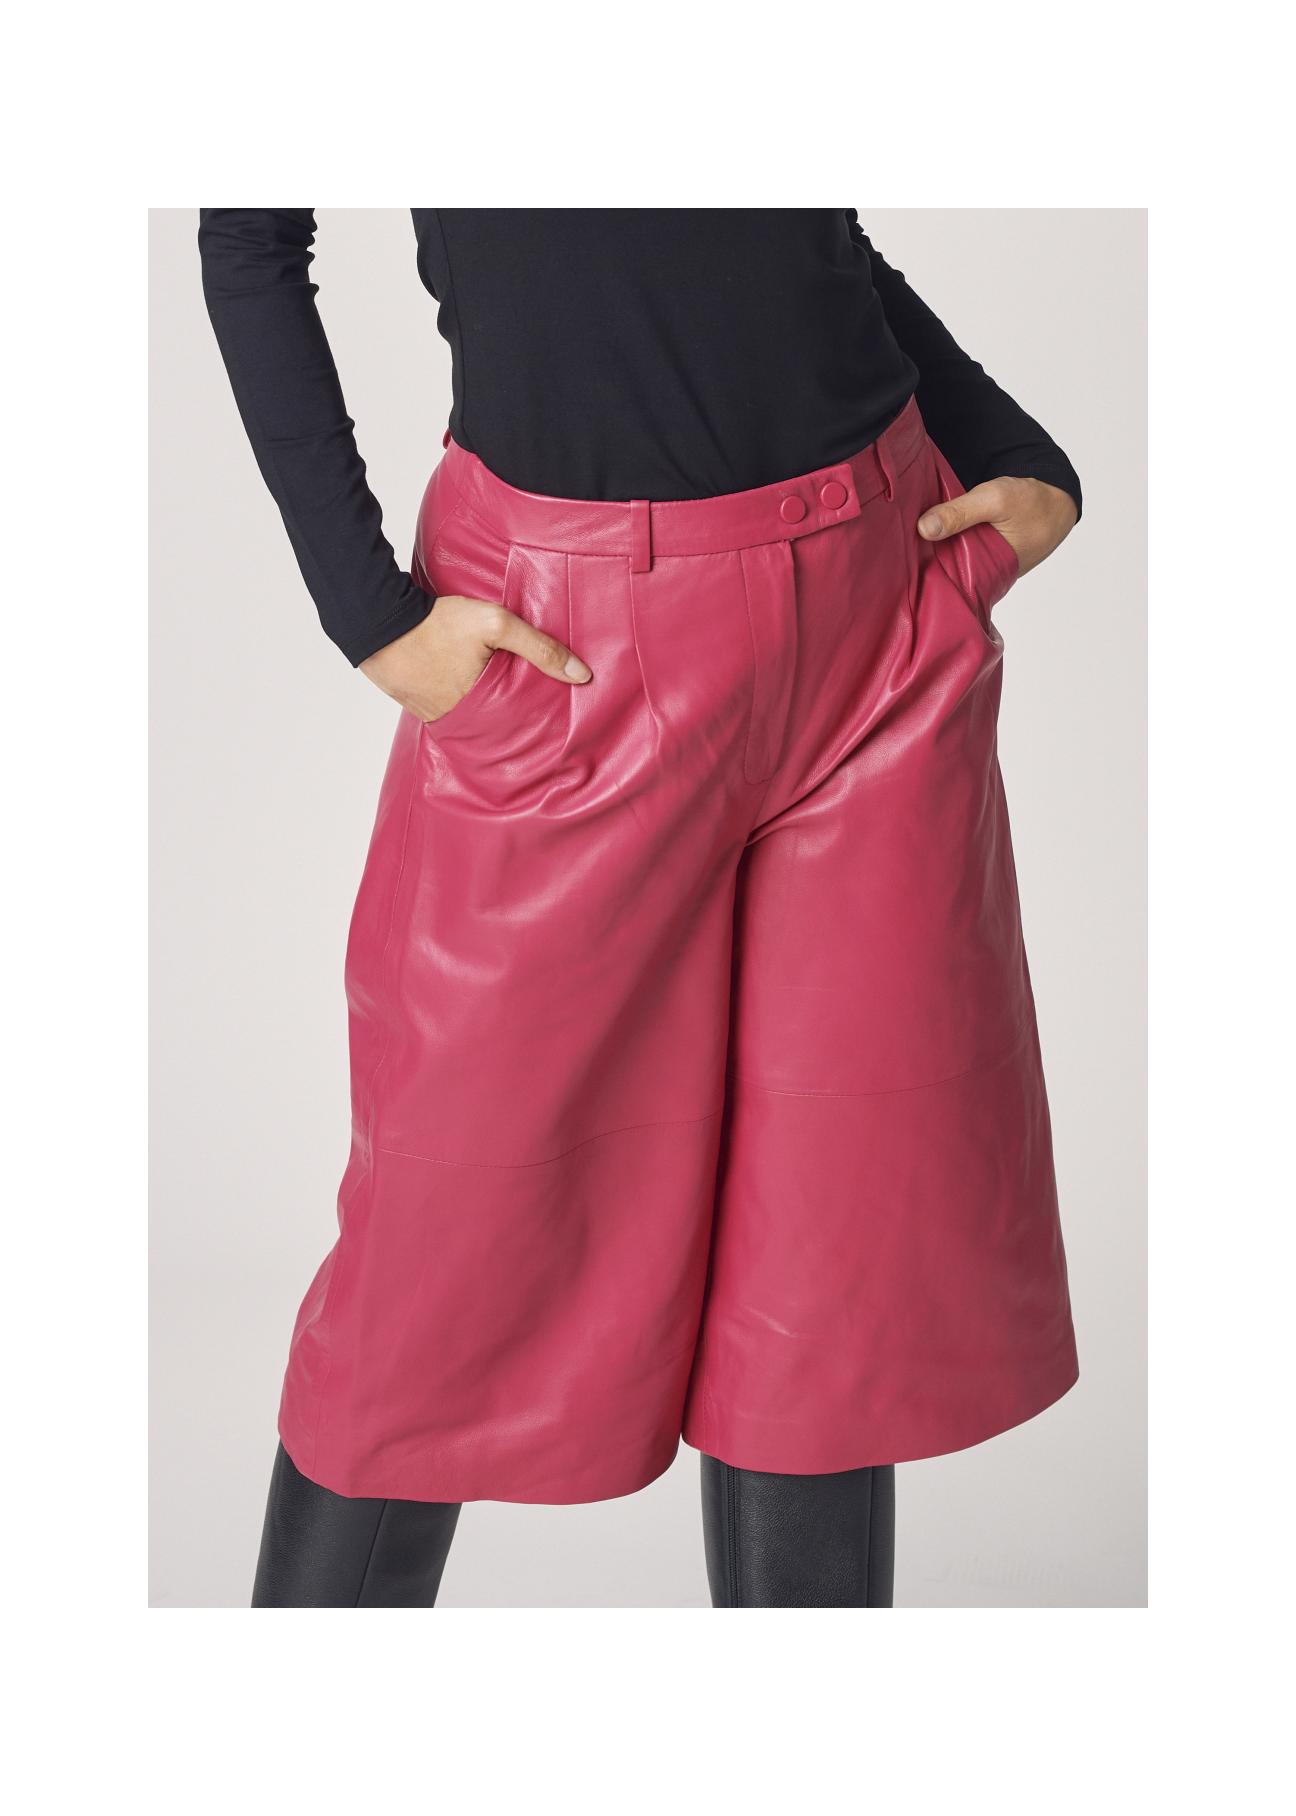 Różowe skórzane krótkie spodnie damskie SPODS-0027-1157(Z21)